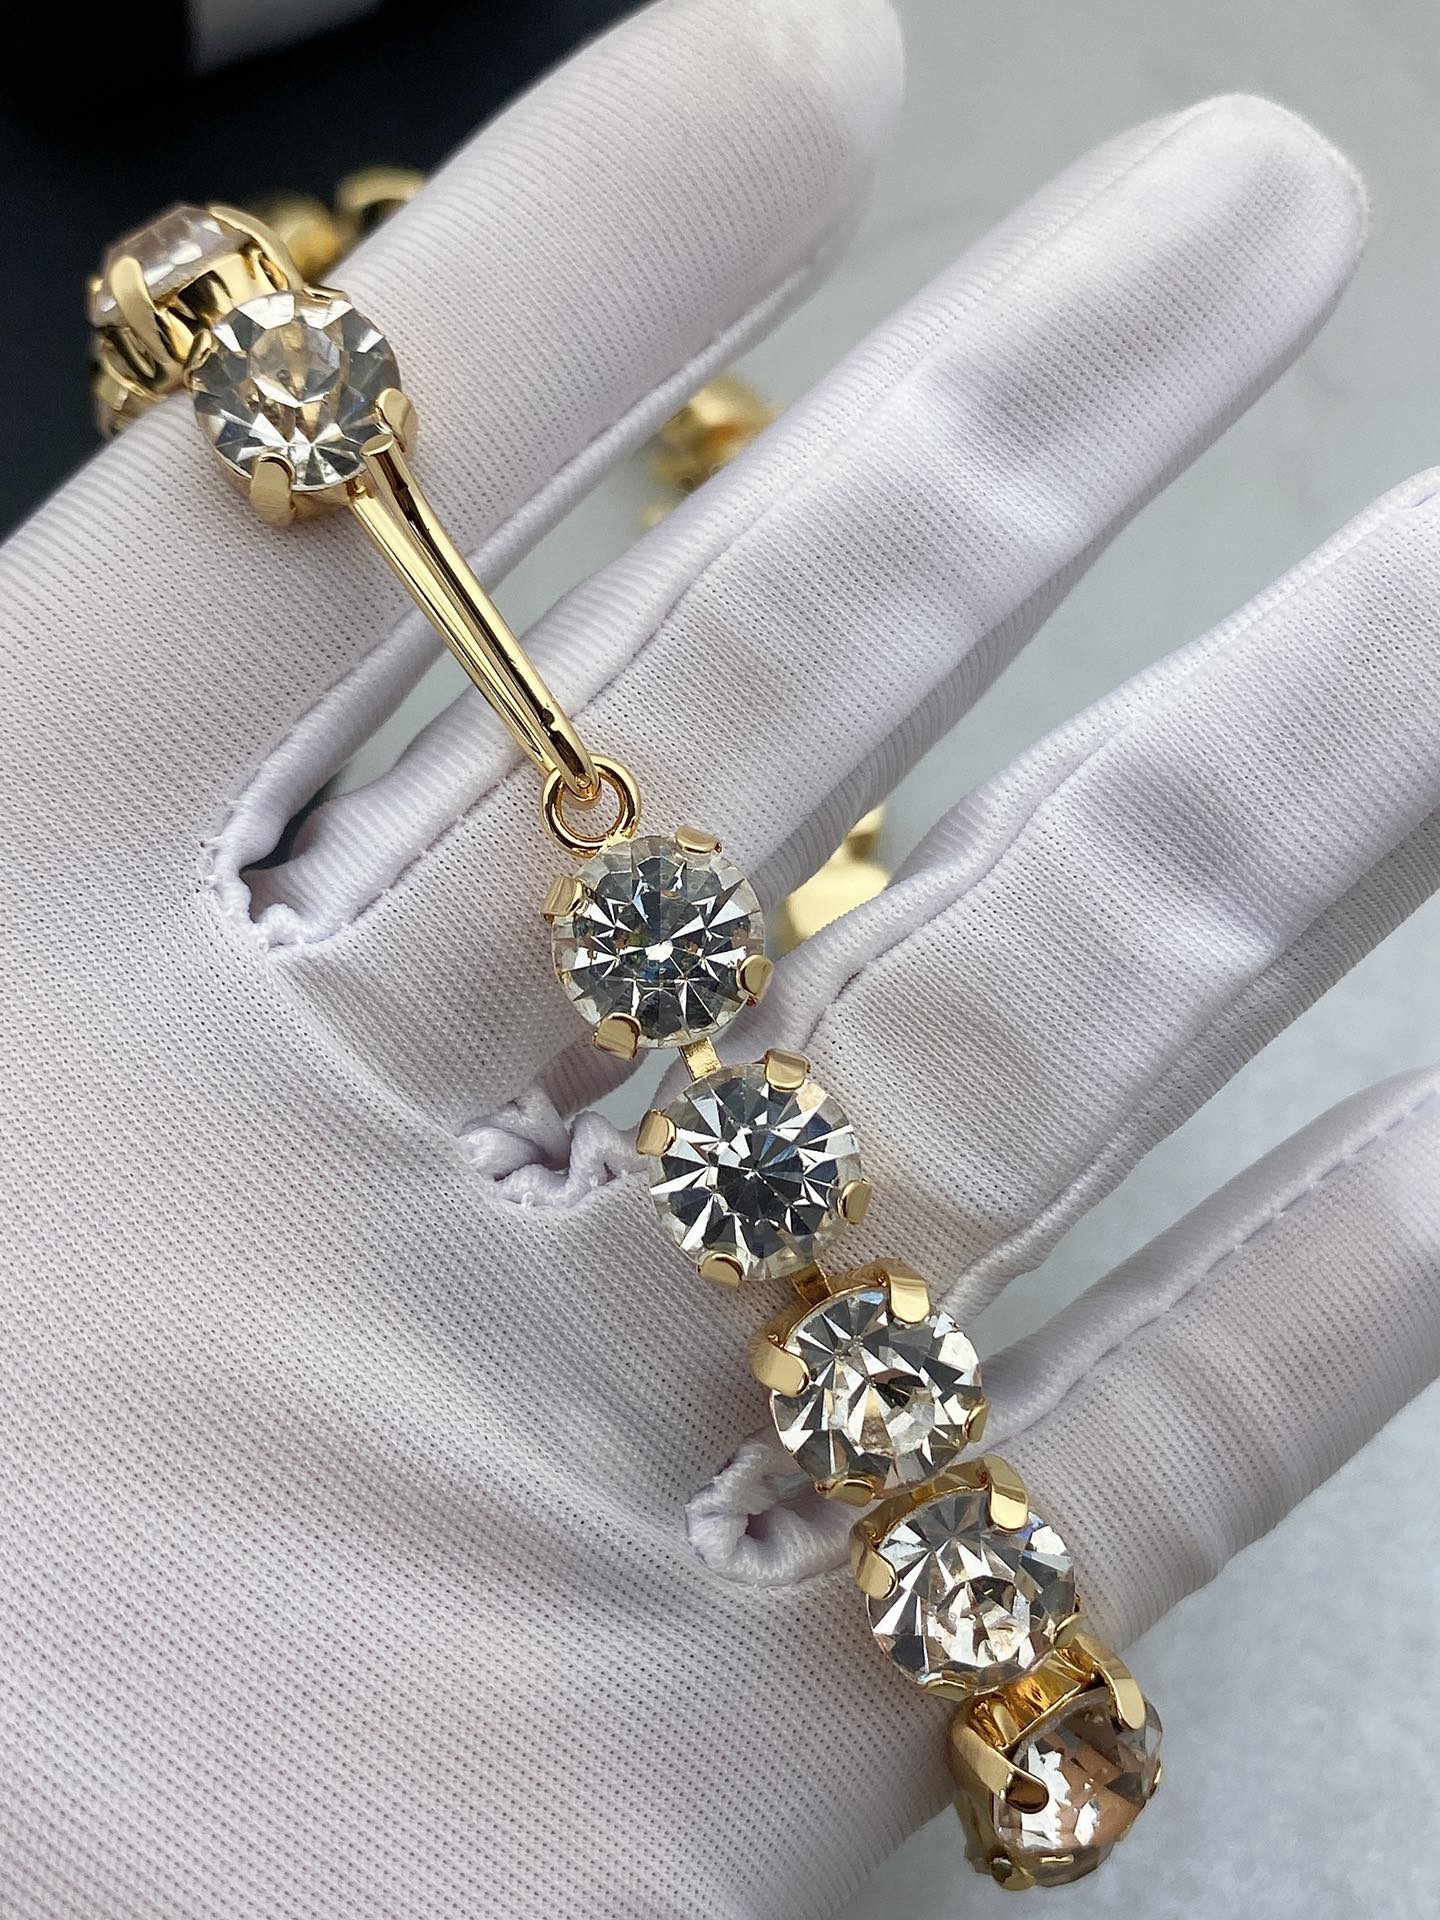 Chanel新款水晶项链一致黄铜材质